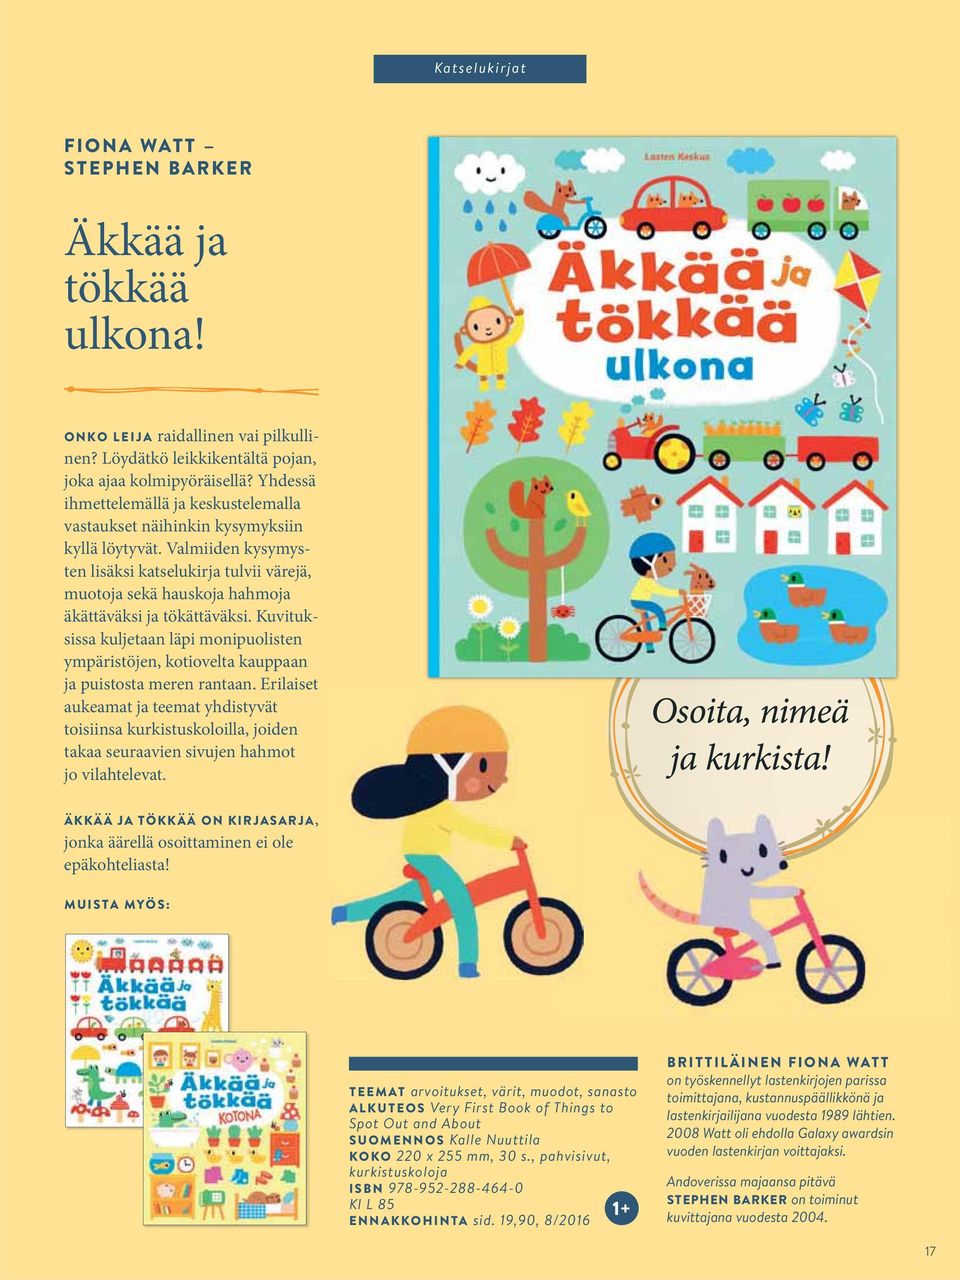 Nuuttila KOKO 220 x 255 mm, 30 s., pahvisivut, kurkistuskoloja ISBN 978-952-288-464-0 Kl L 85 1+ ENNAKKOHINTA sid.